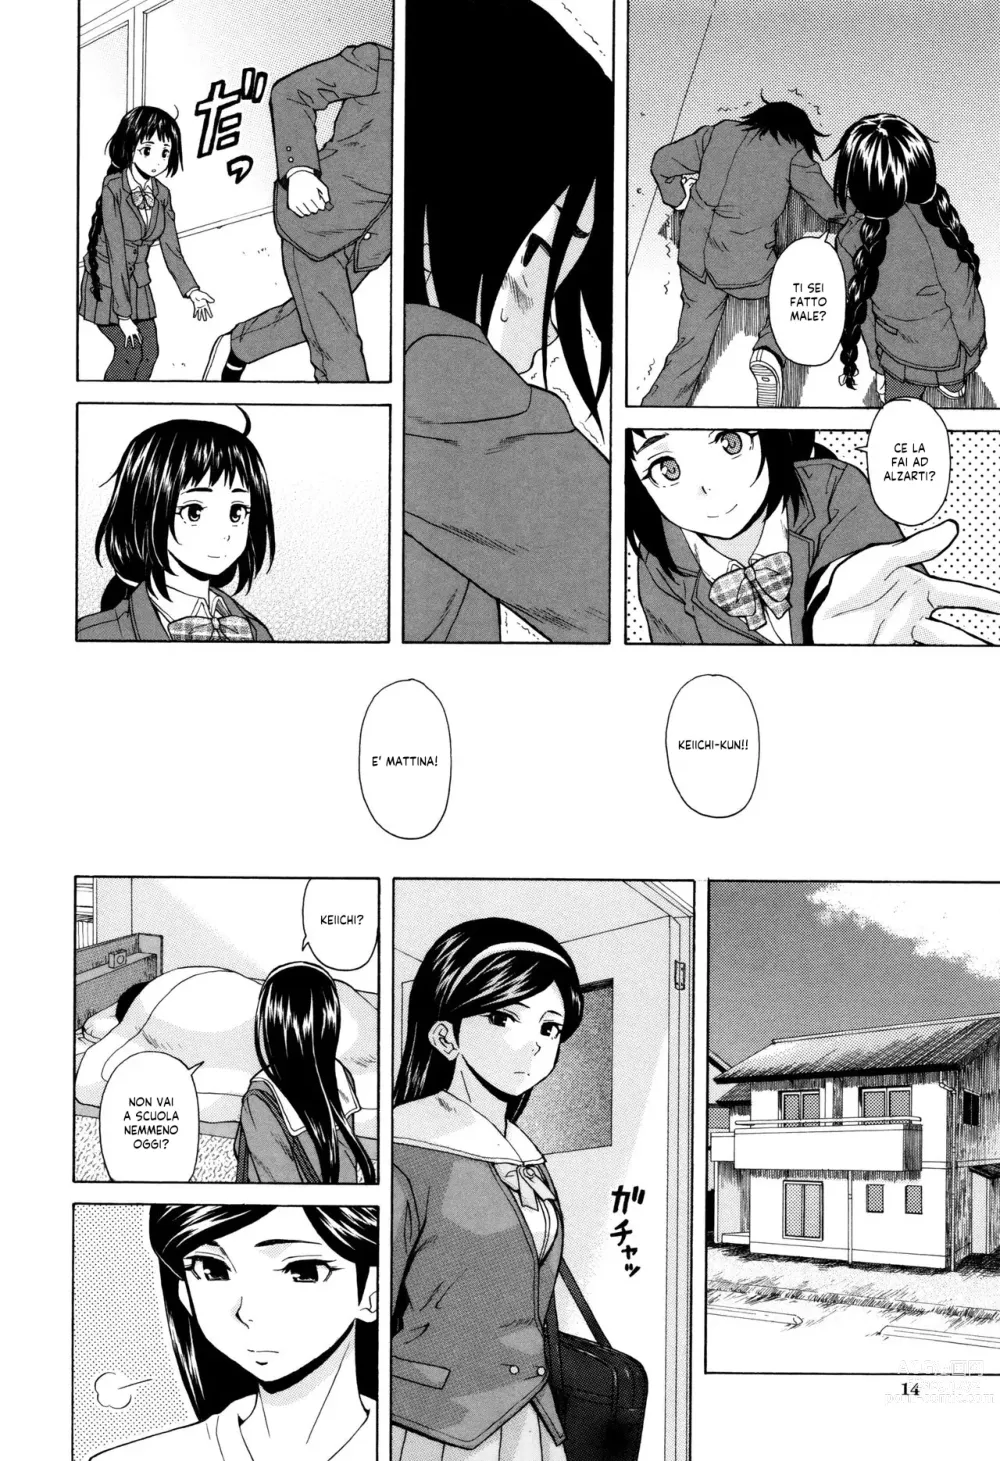 Page 15 of manga Segreti, Suicidi e Sorelle (decensored)